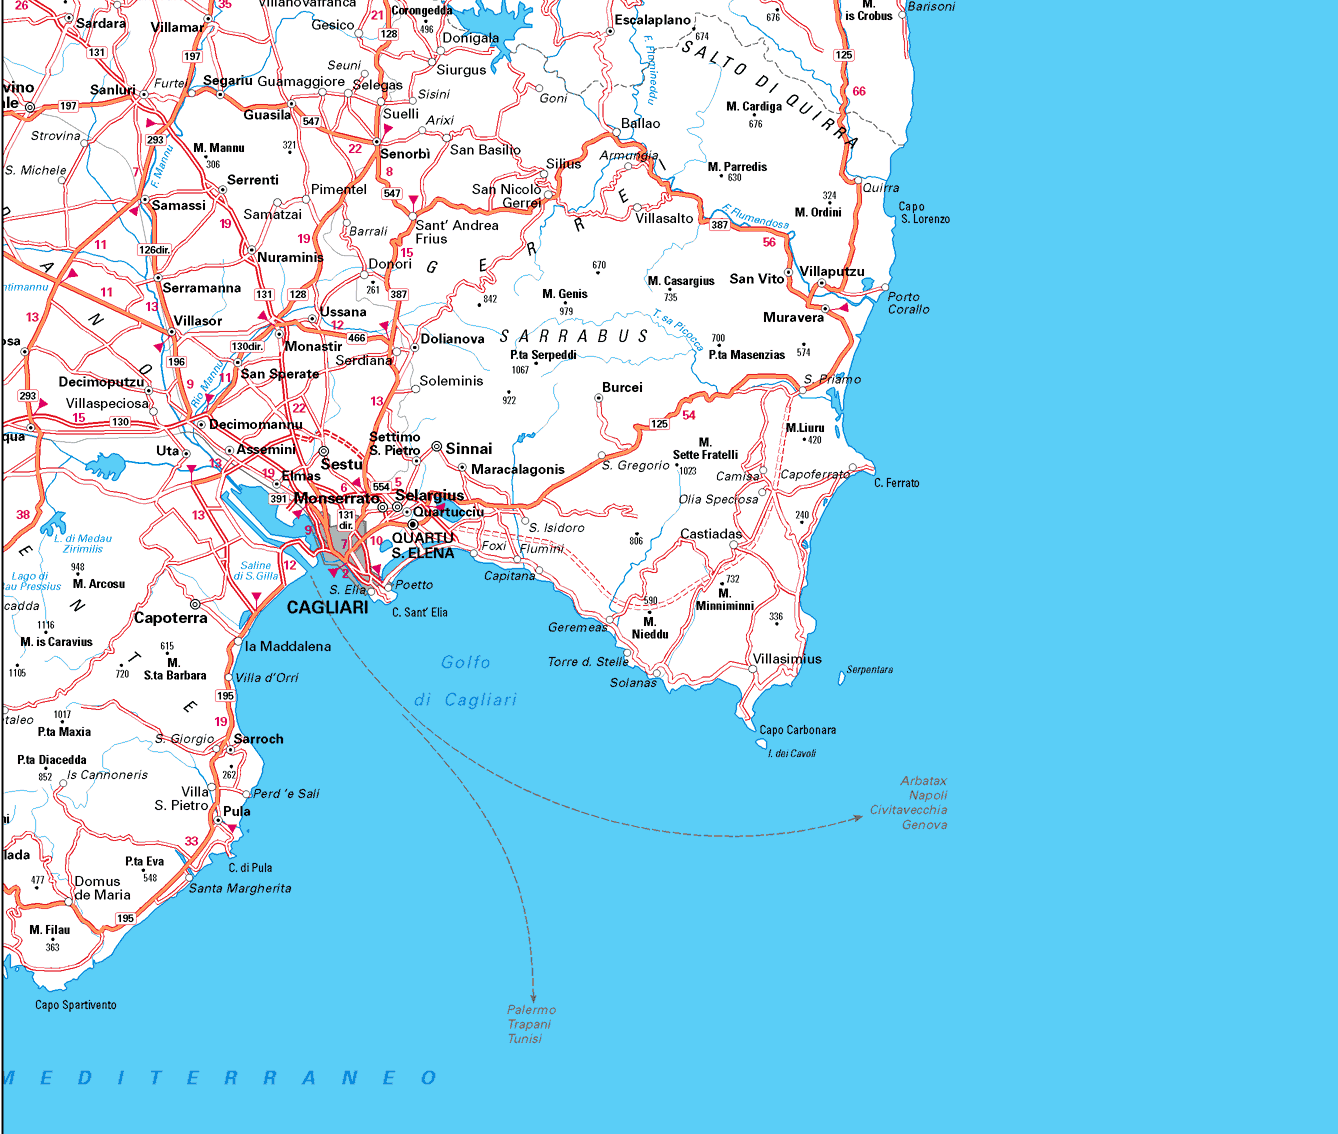 Cagliari area map